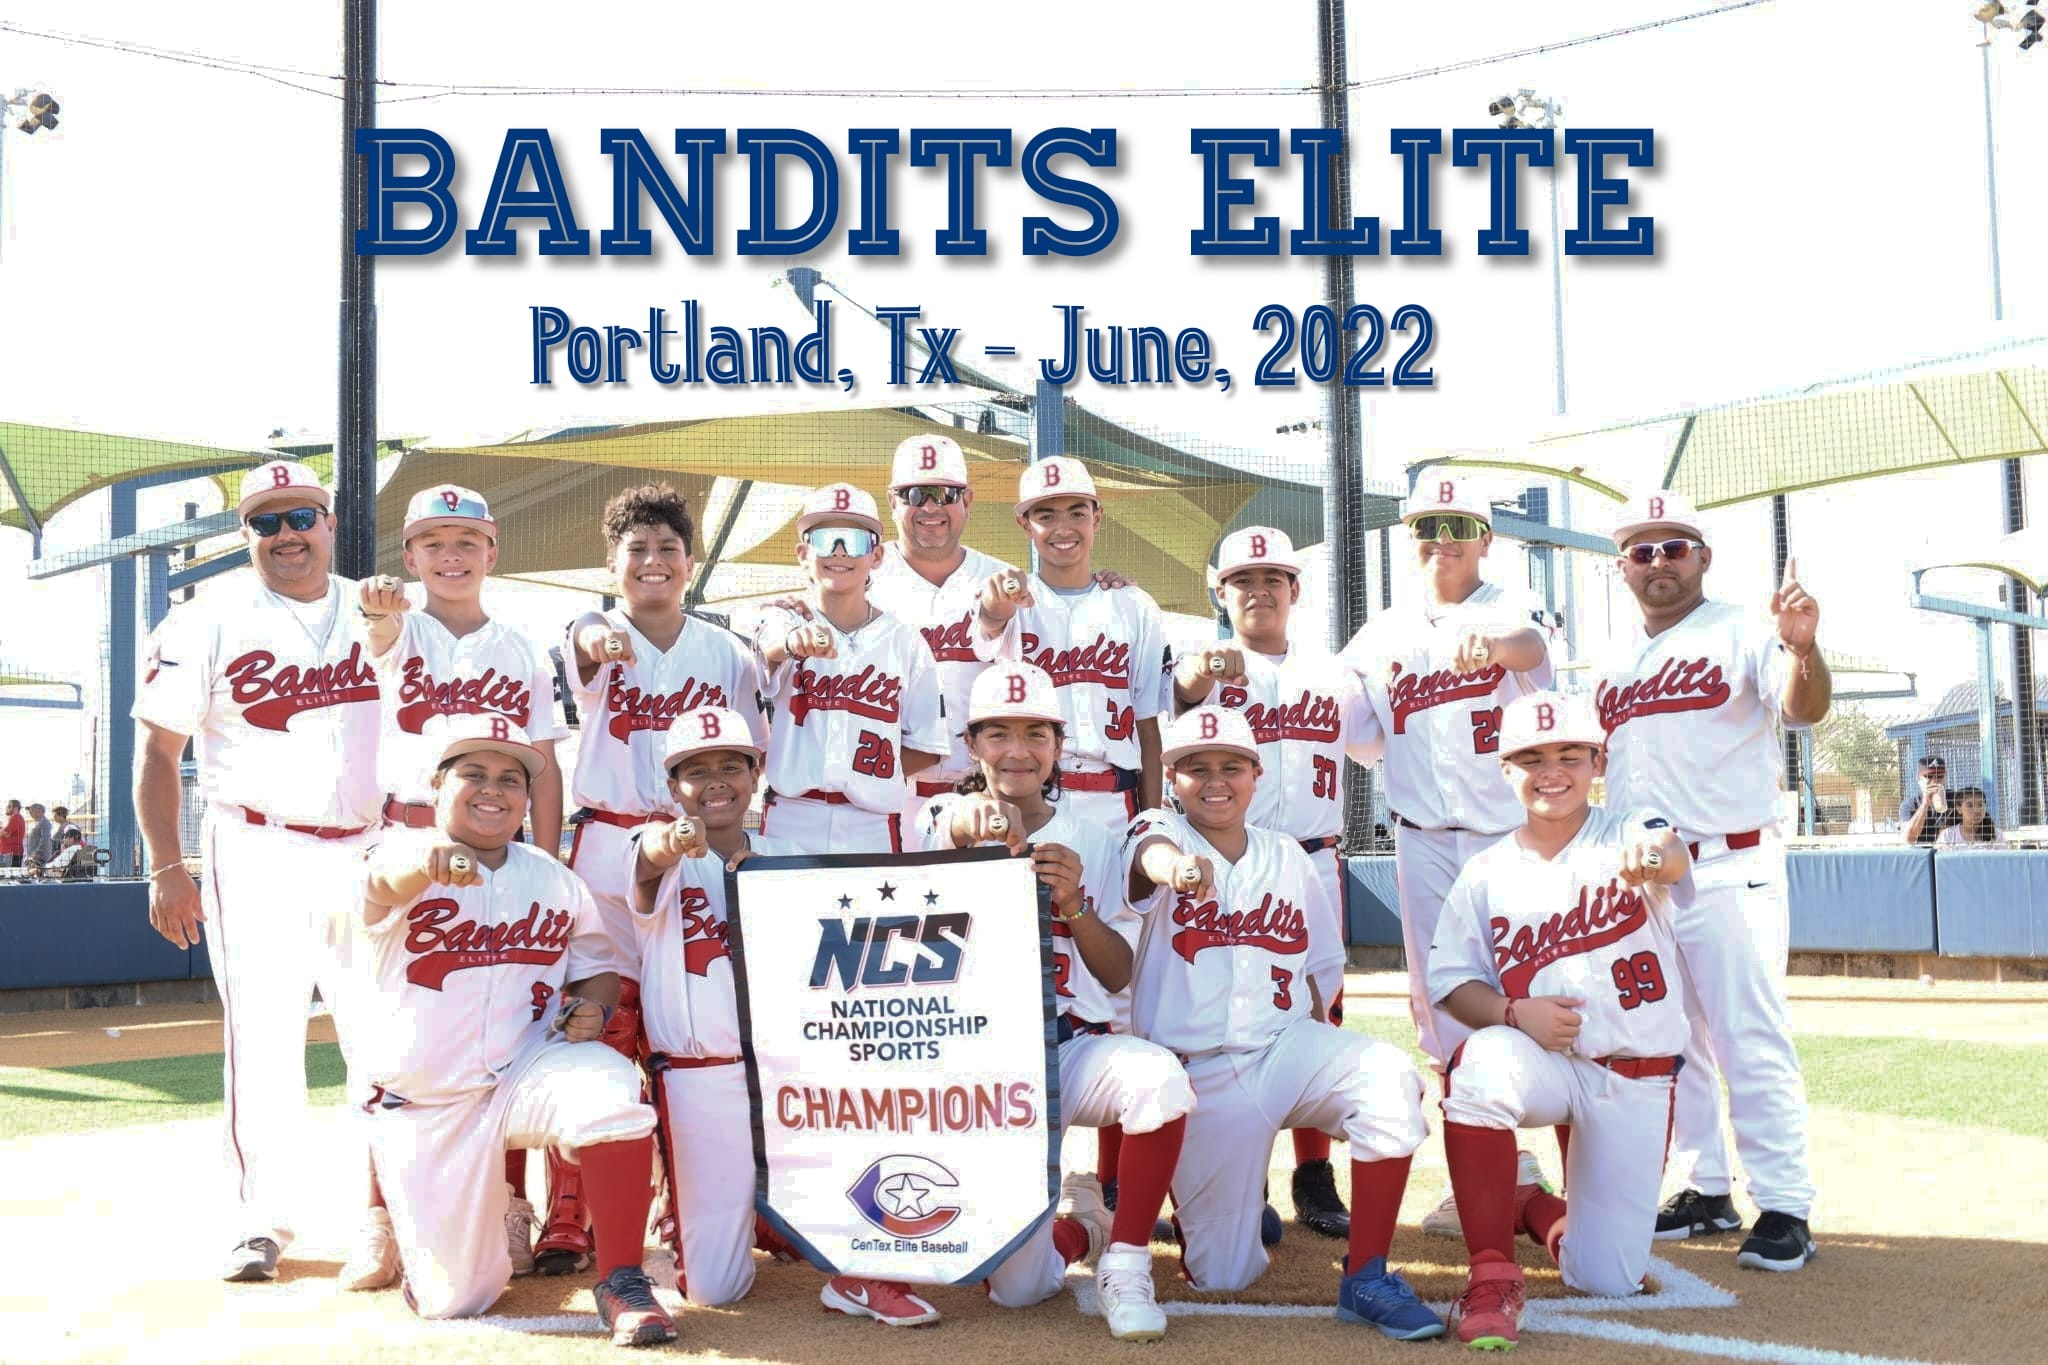 National Championship Sports, Baseball, Bandits Elite